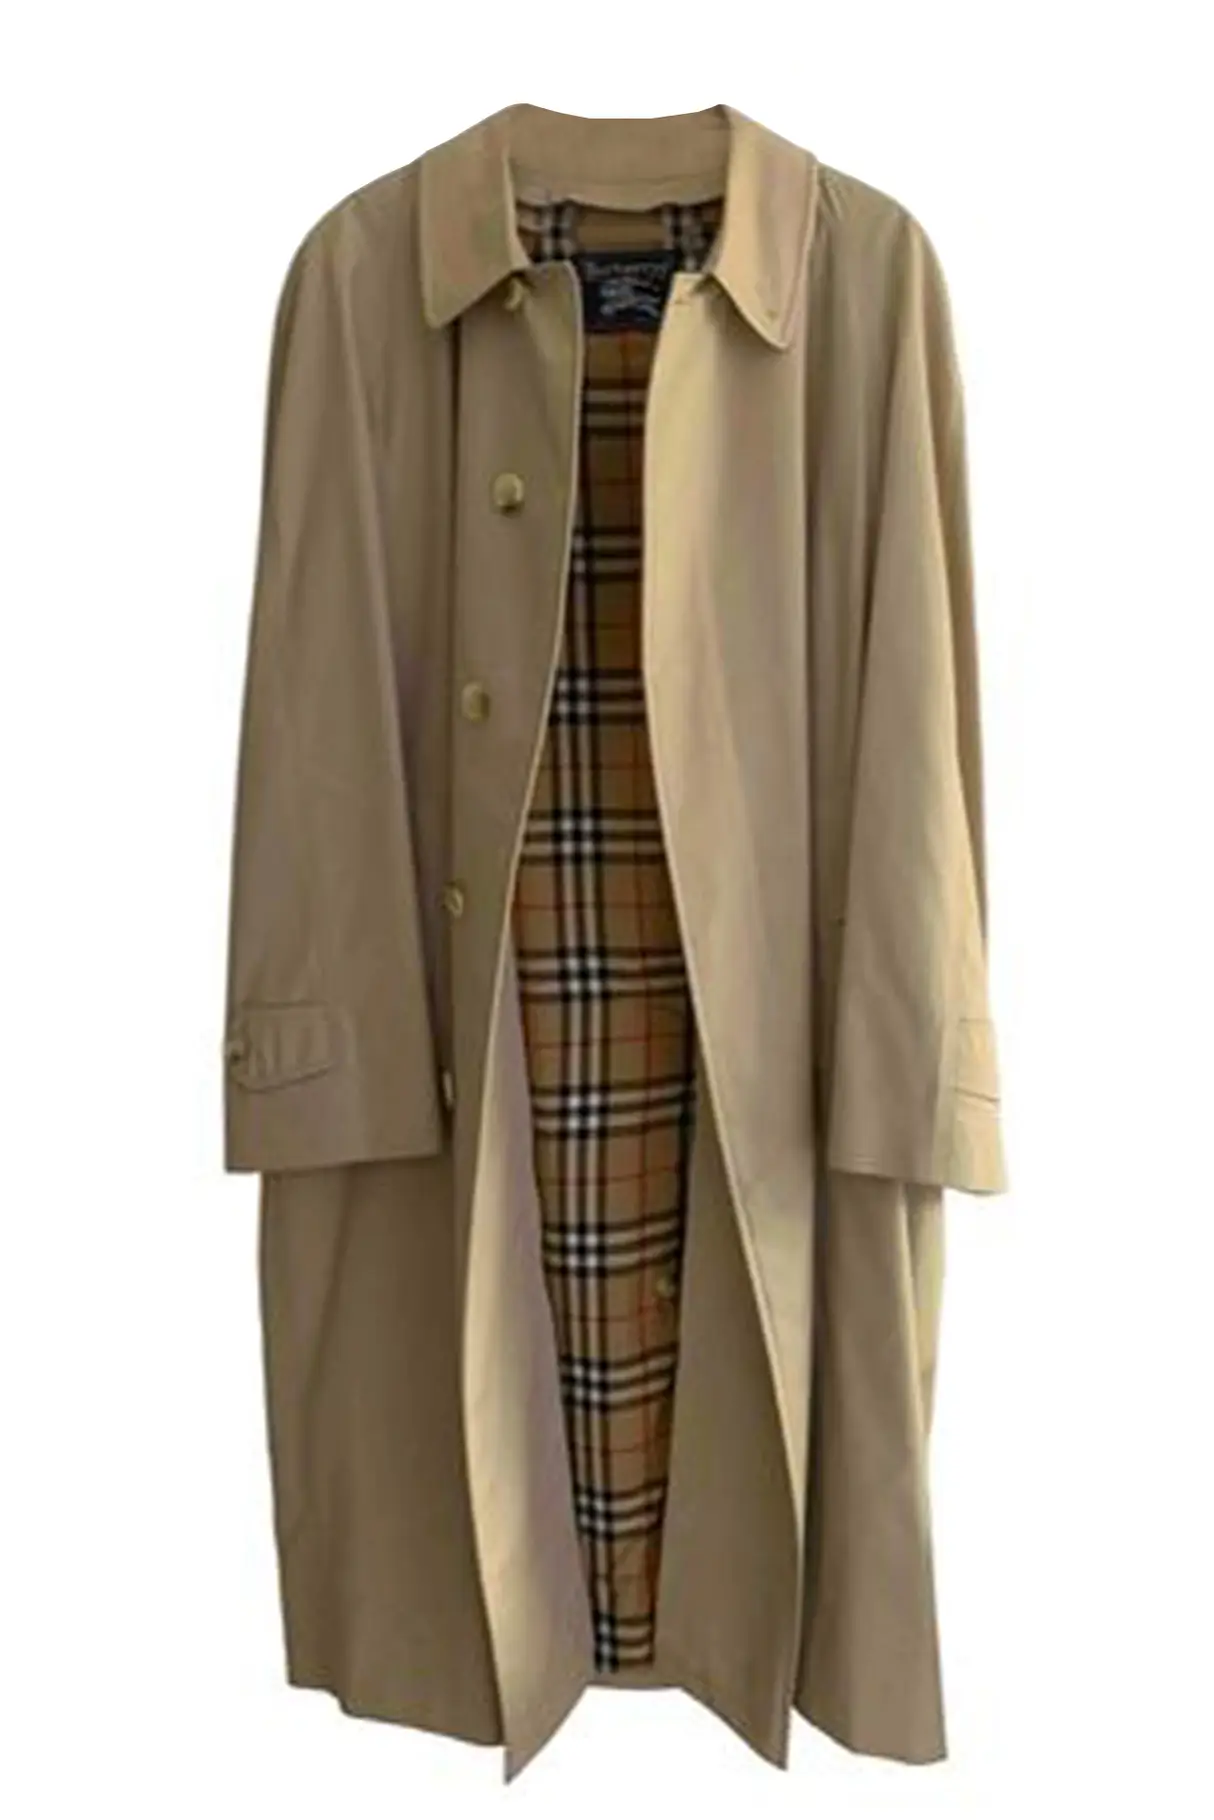 burberry-beige-cotton-trench-coat.jpg